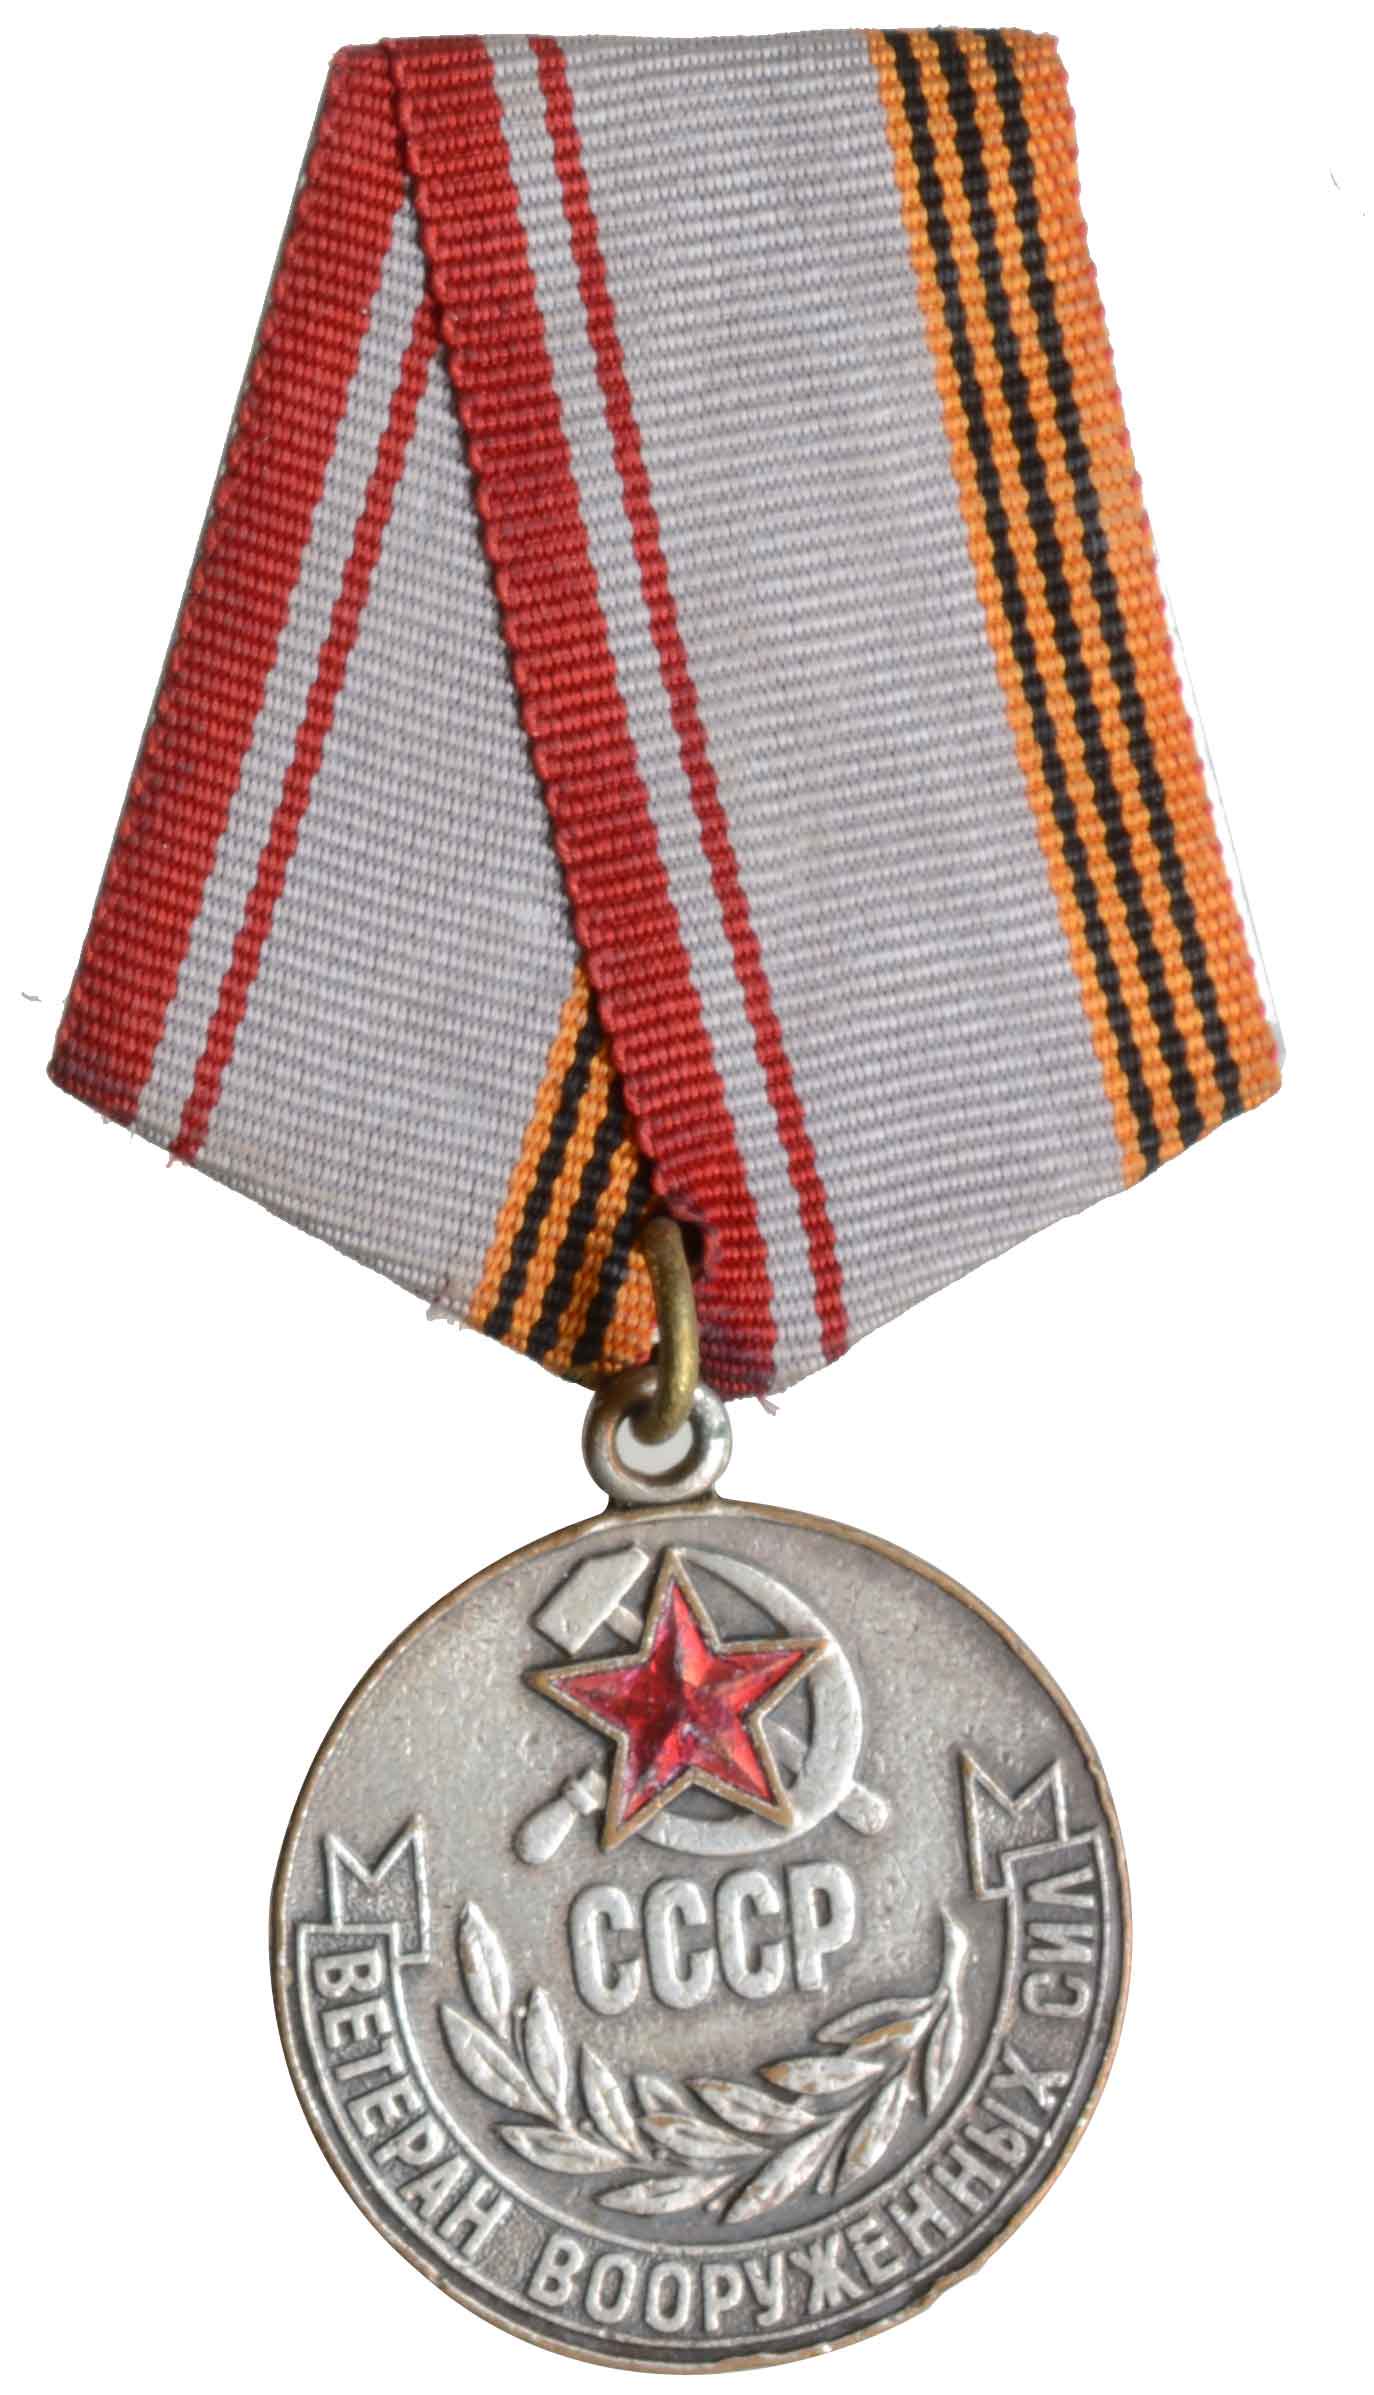 ソビエト連邦軍退役軍人記章
